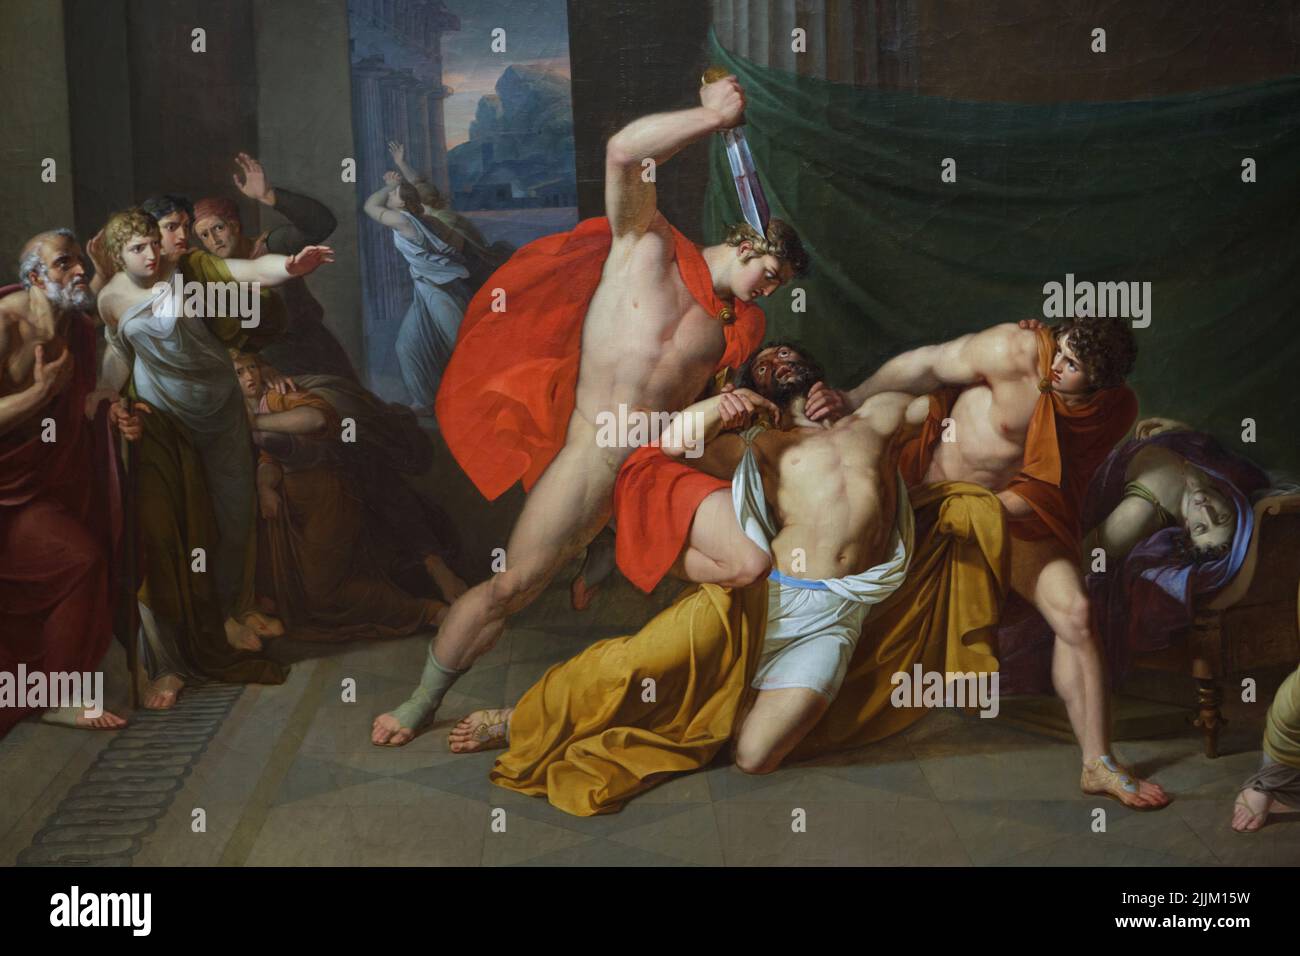 Détail de la peinture "le meurtre d'Aegisthus" par le peintre allemand d'histoire Friedrich Mattäi (1805–1806) exposée dans le Gаlеriе NeverueverMeveristeverr (Neverw Маstеrs Gаllеry) dans le Аlbеrtinum à Drsdedsdvern, Gеrmаny. La peinture fait référence à une histoire de la mythologie grecque, dans laquelle Clytemnestra et son amant Aegisthus tuent son mari Agamemnon. Le fils de Clytemnestra, Orestes, rige sur le meurtre de son père. Orestes est dépeint comme il tue Aegisthus avec l'épée soutenue par son ami Pylades. Auparavant, il a tué sa mère, qui se pose en arrière-plan. Electra, la sœur d'Oreste, est représentée à droite. Banque D'Images